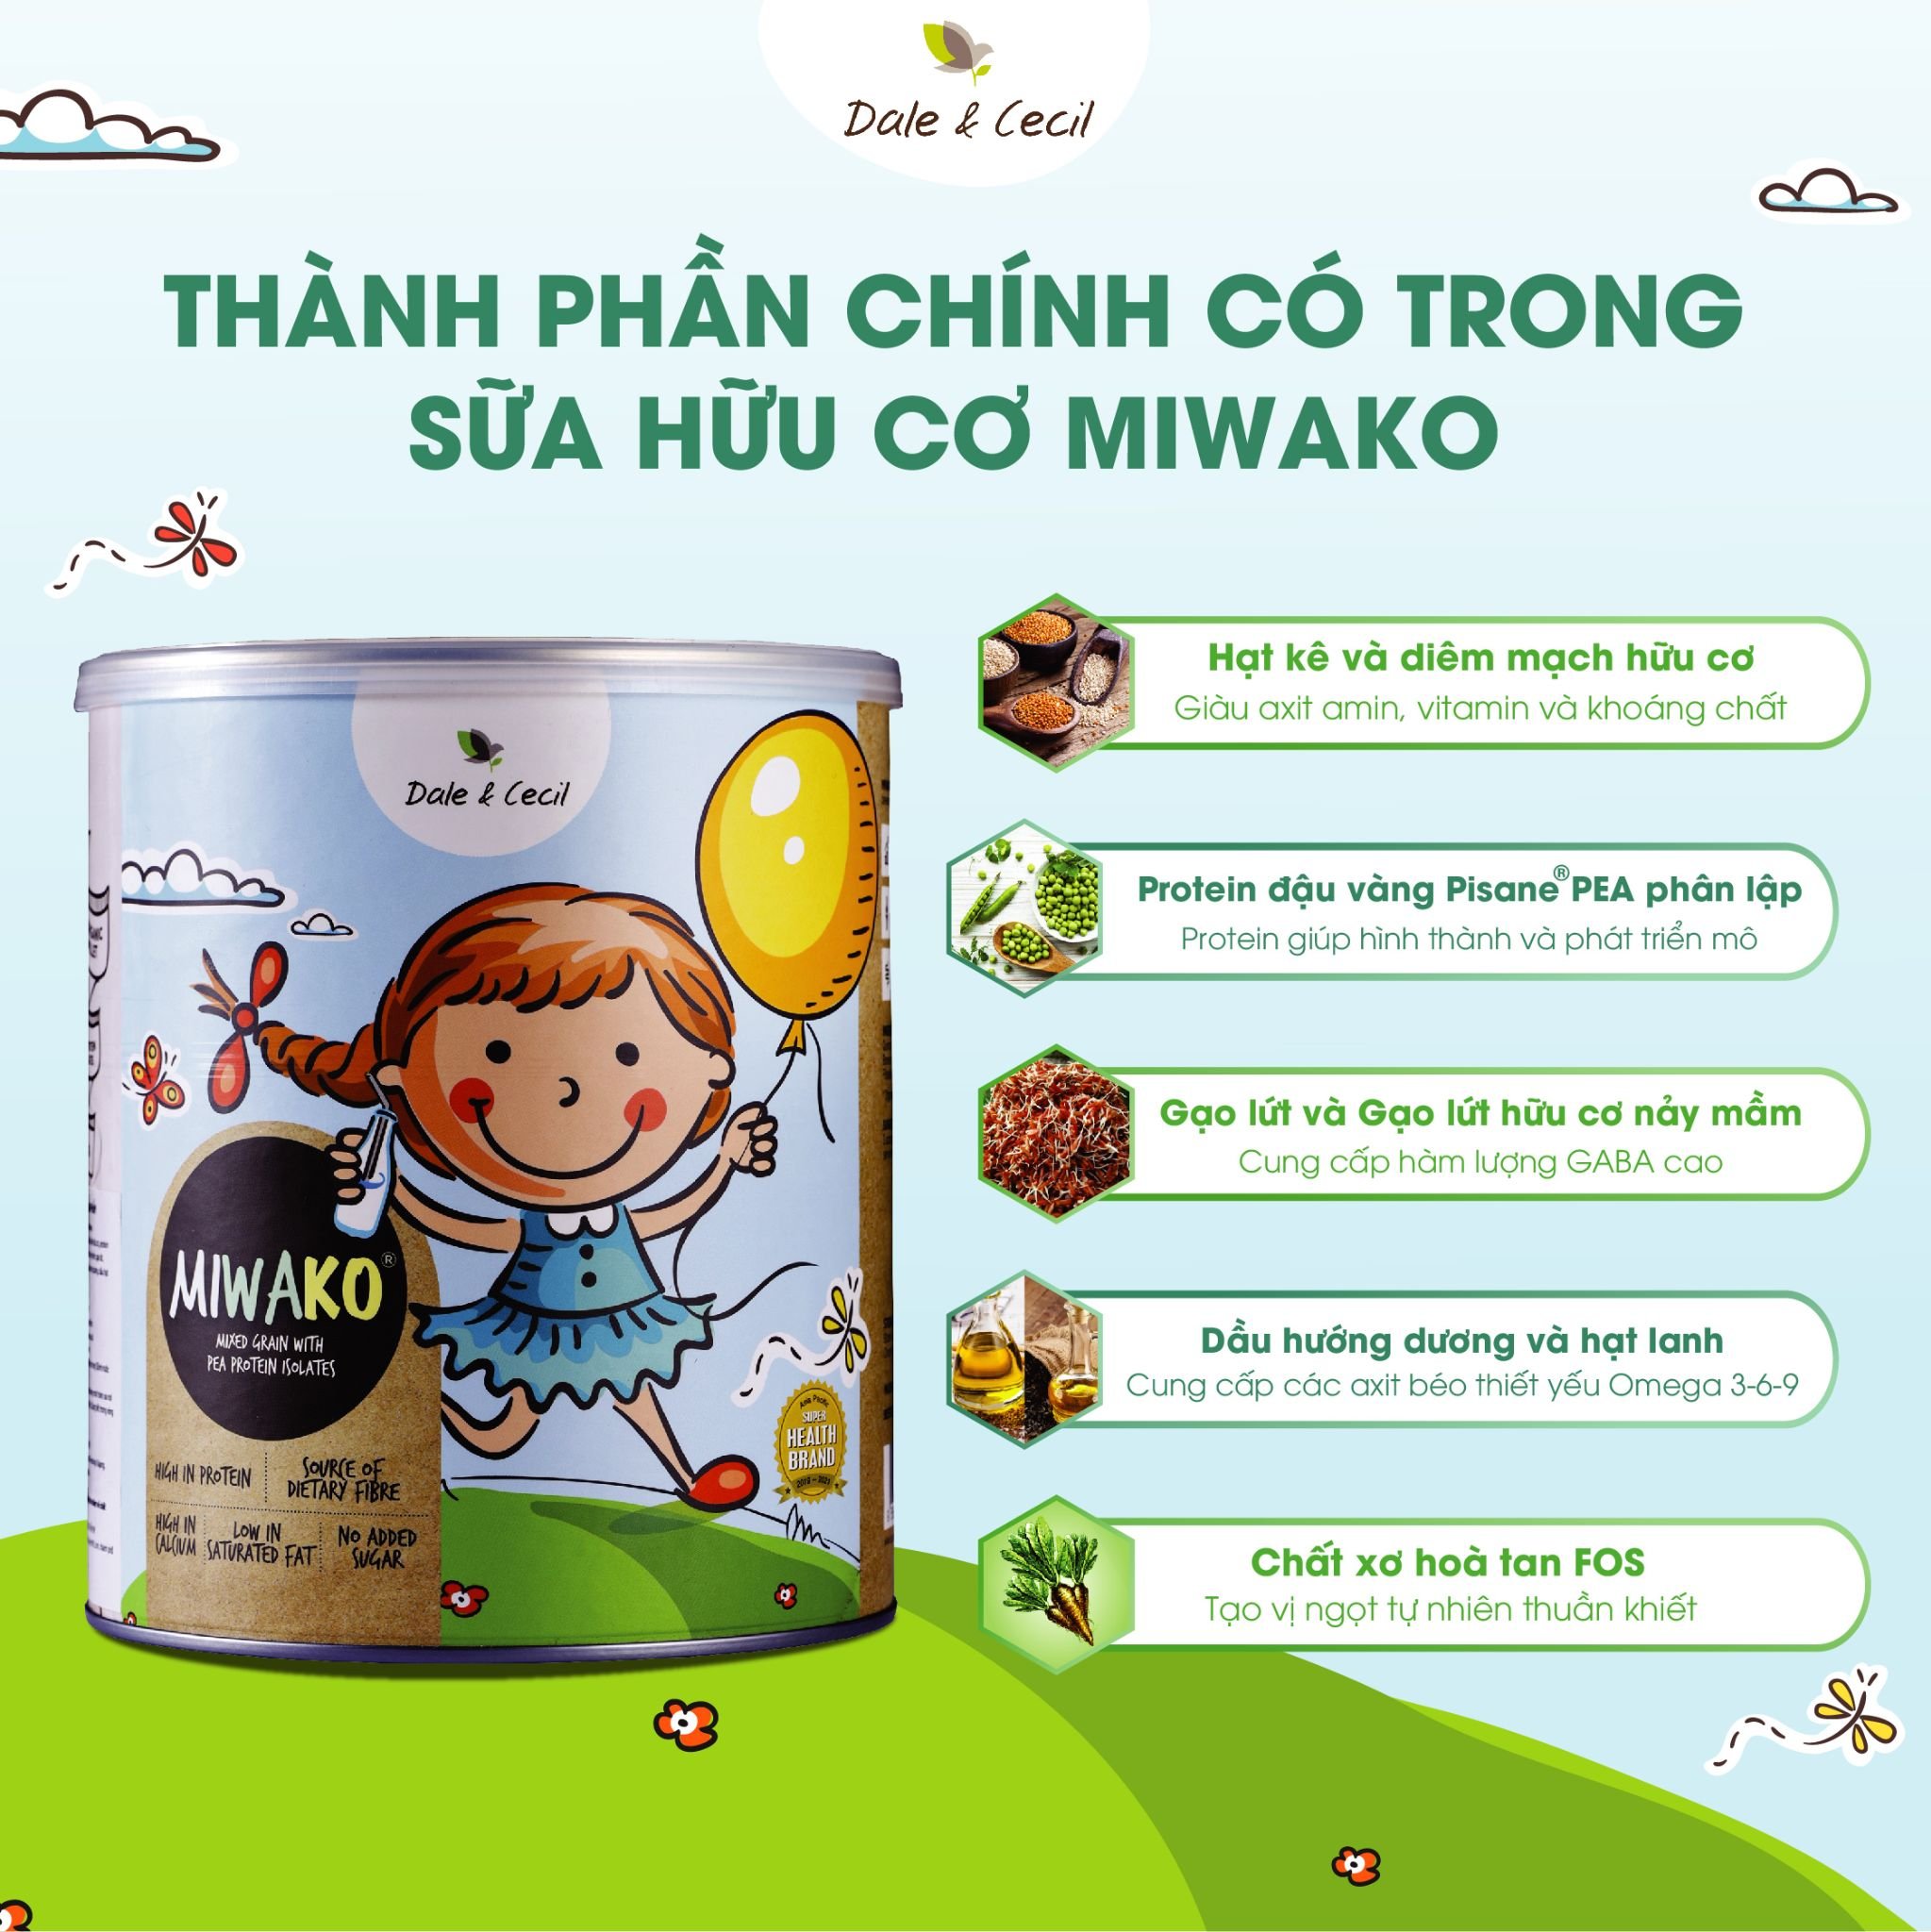 Combo 2 Hộp Sữa Hạt Miwako Vị Gạo Hộp 700g Malaysia, Sữa Thực Vật Hữu Cơ Dành Cho Bé Từ 1 Tuổi Dị Ứng Đạm Bò, Giảm Táo Bón